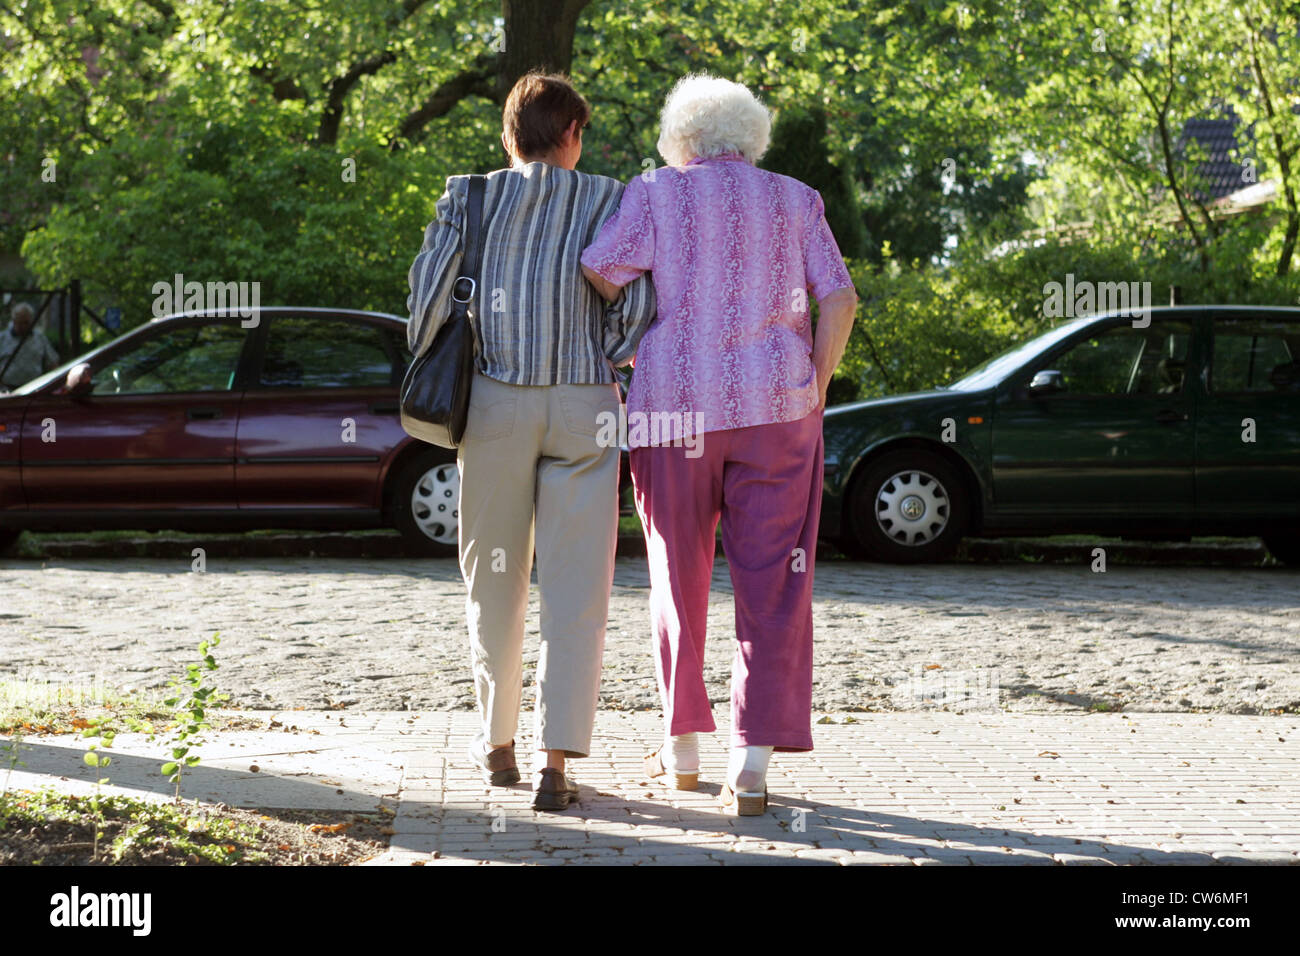 Berlin, une femme contribue à un retraité de l'autre côté de la route Banque D'Images